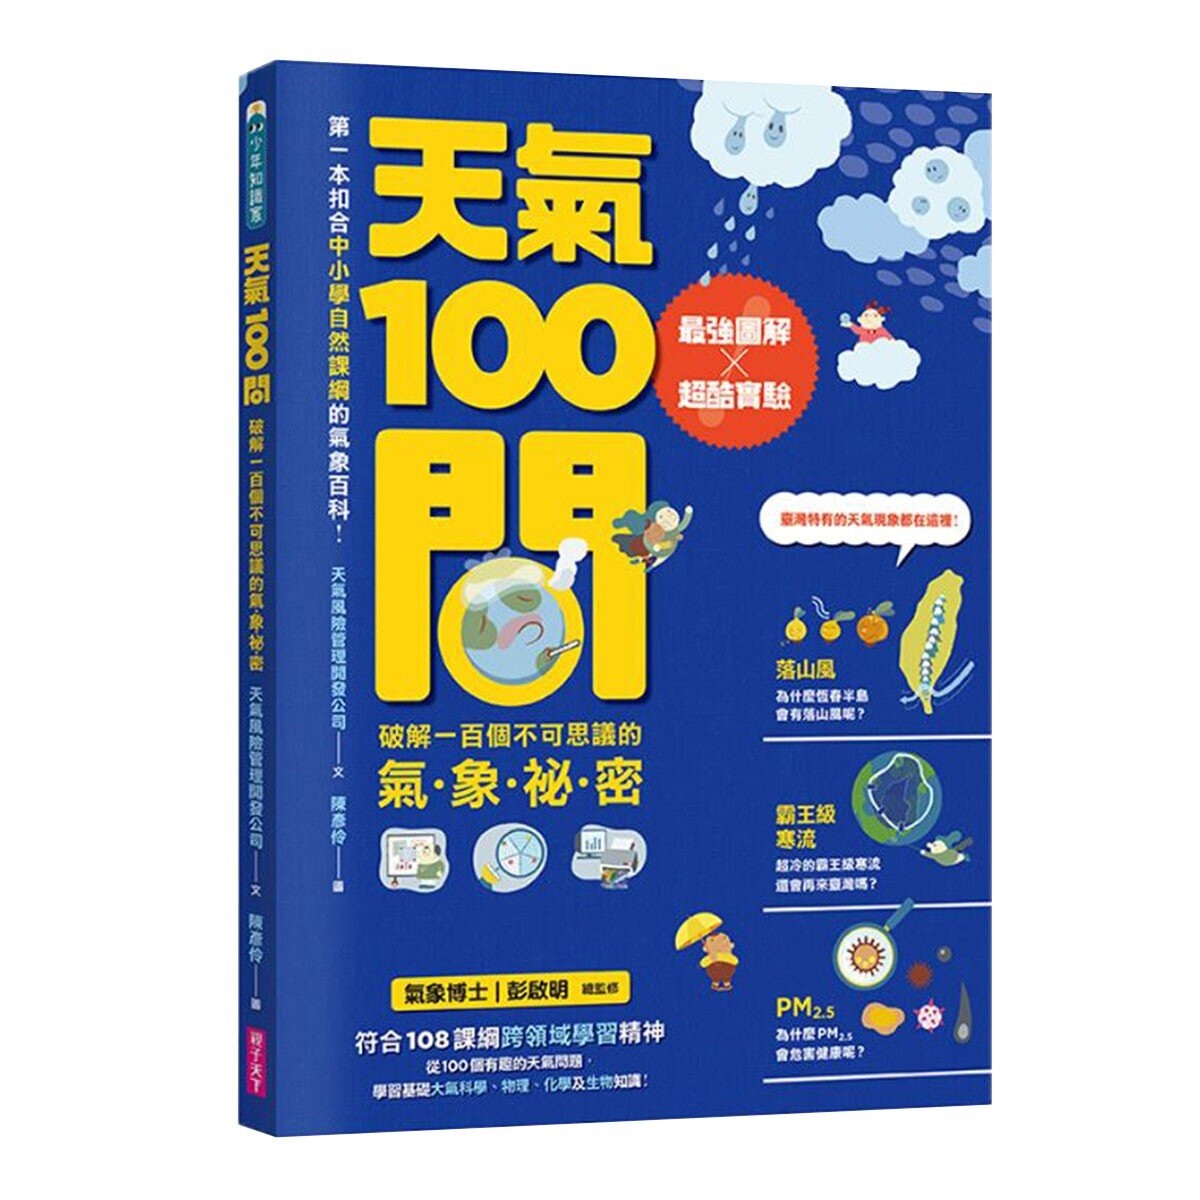 中小學生必讀100問系列套書 共4冊